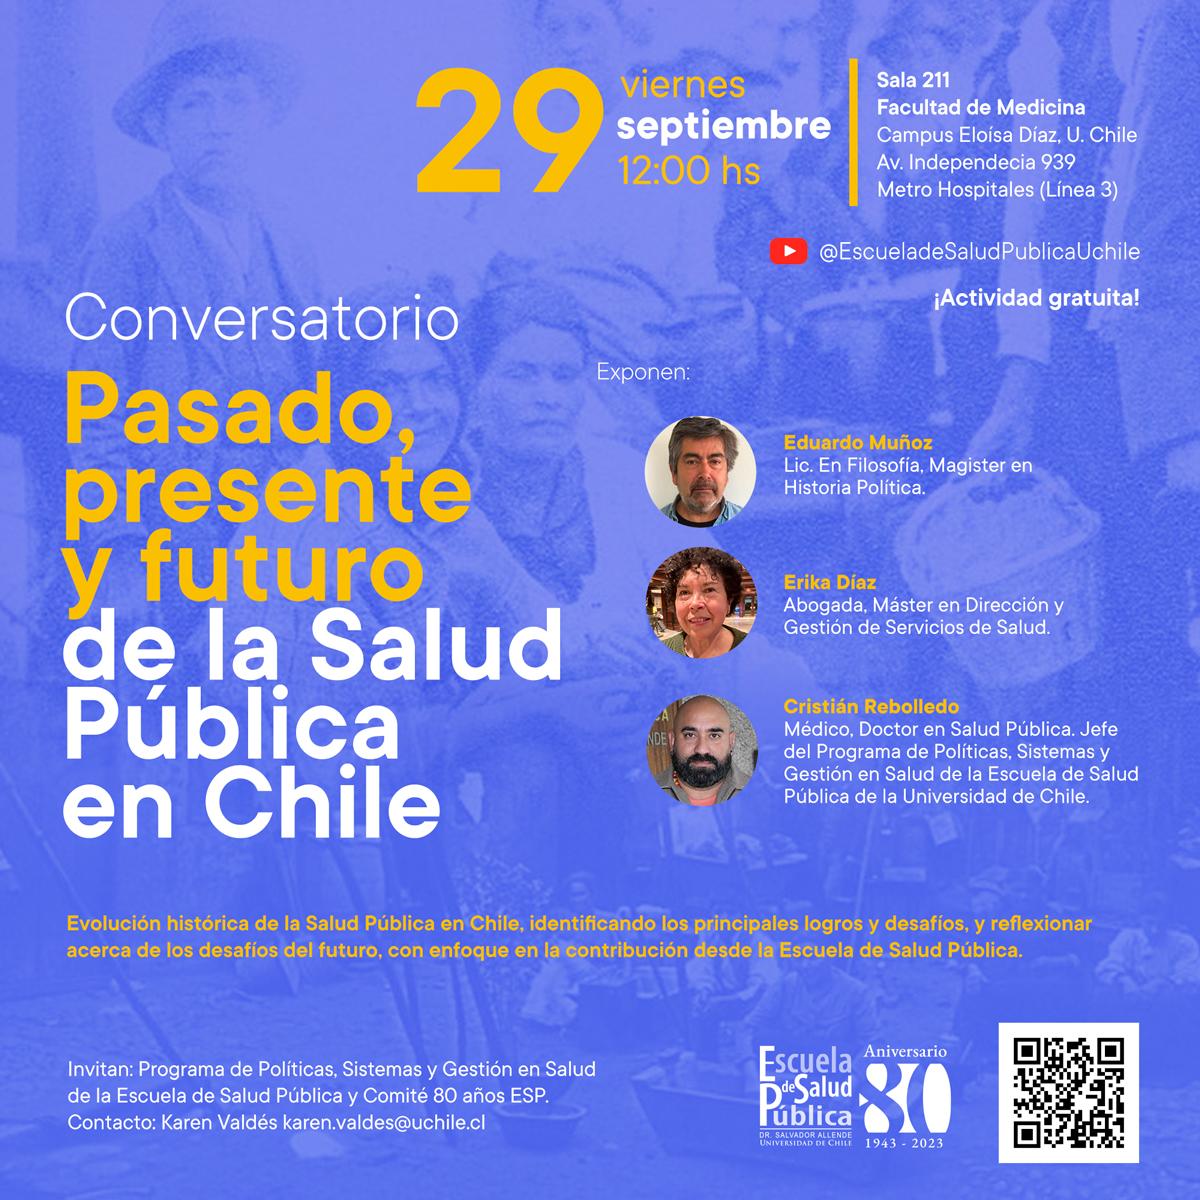 Conversatorio sobre “Pasado, Presente y Futuro de la Salud Pública en Chile